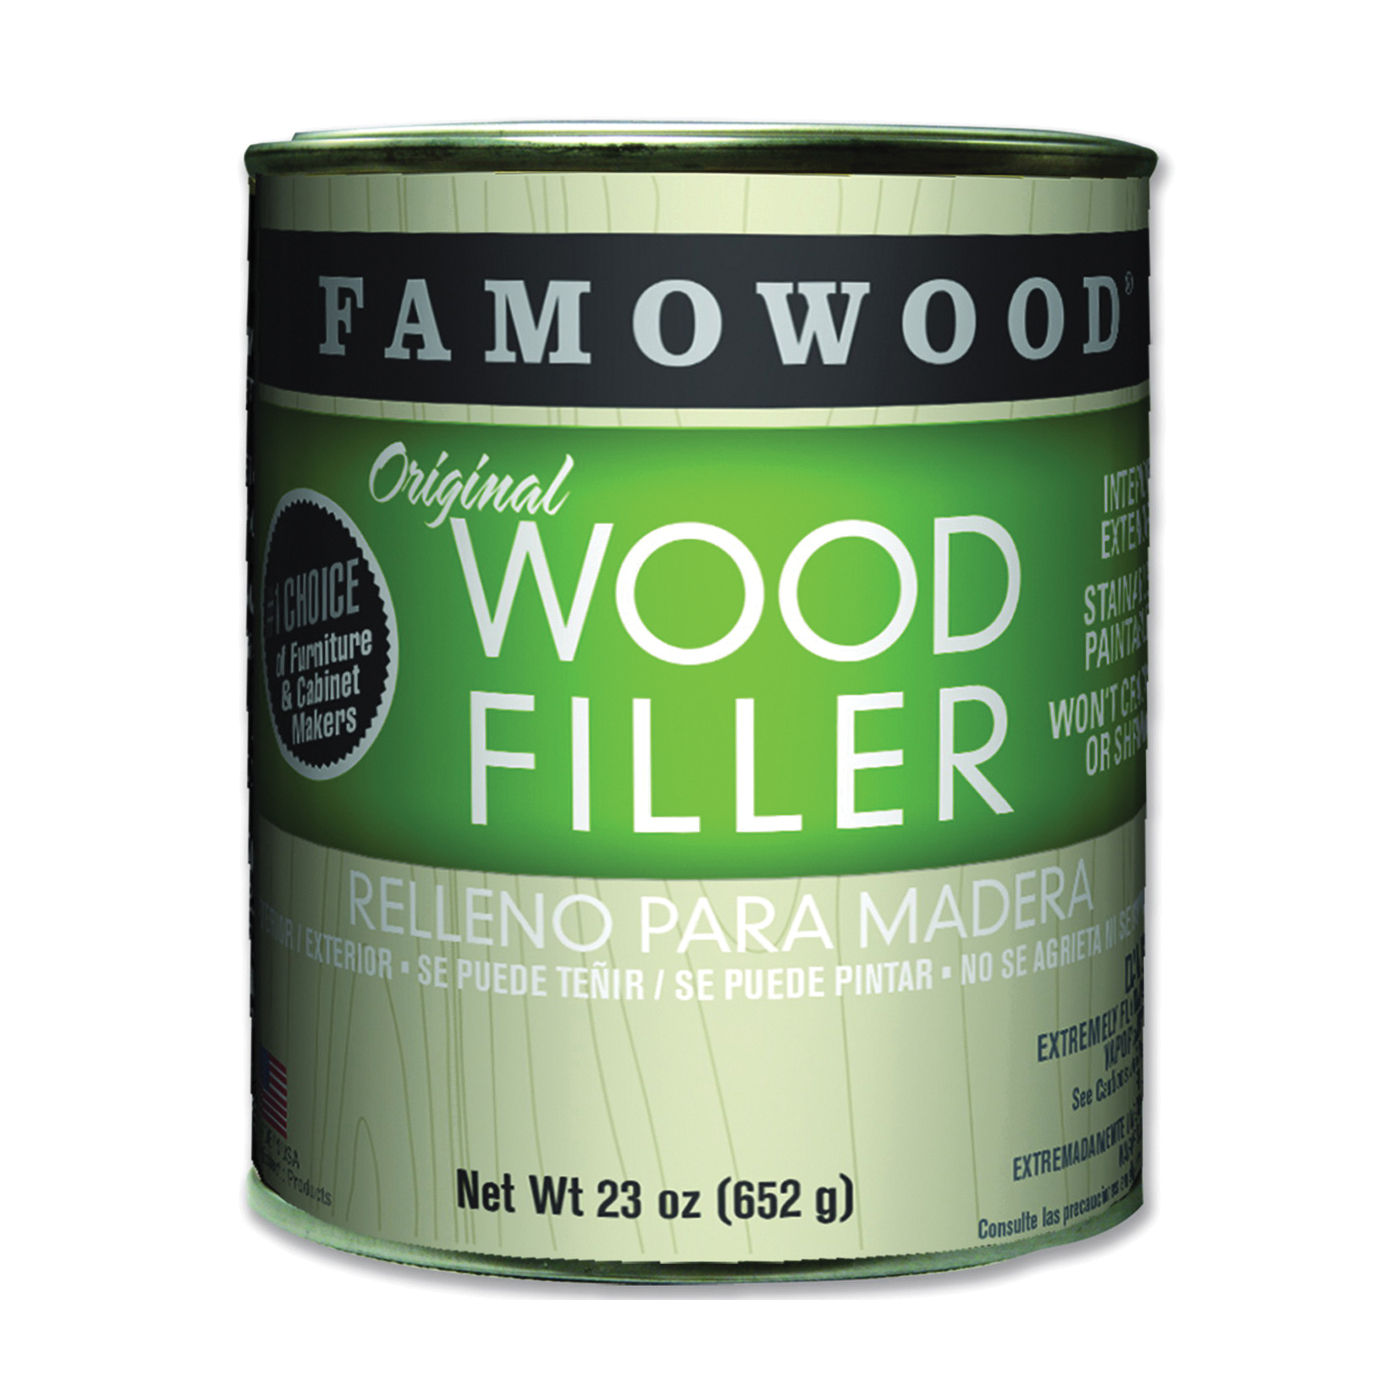 36021130 Original Wood Filler, Liquid, Paste, Fir, 24 oz, Can